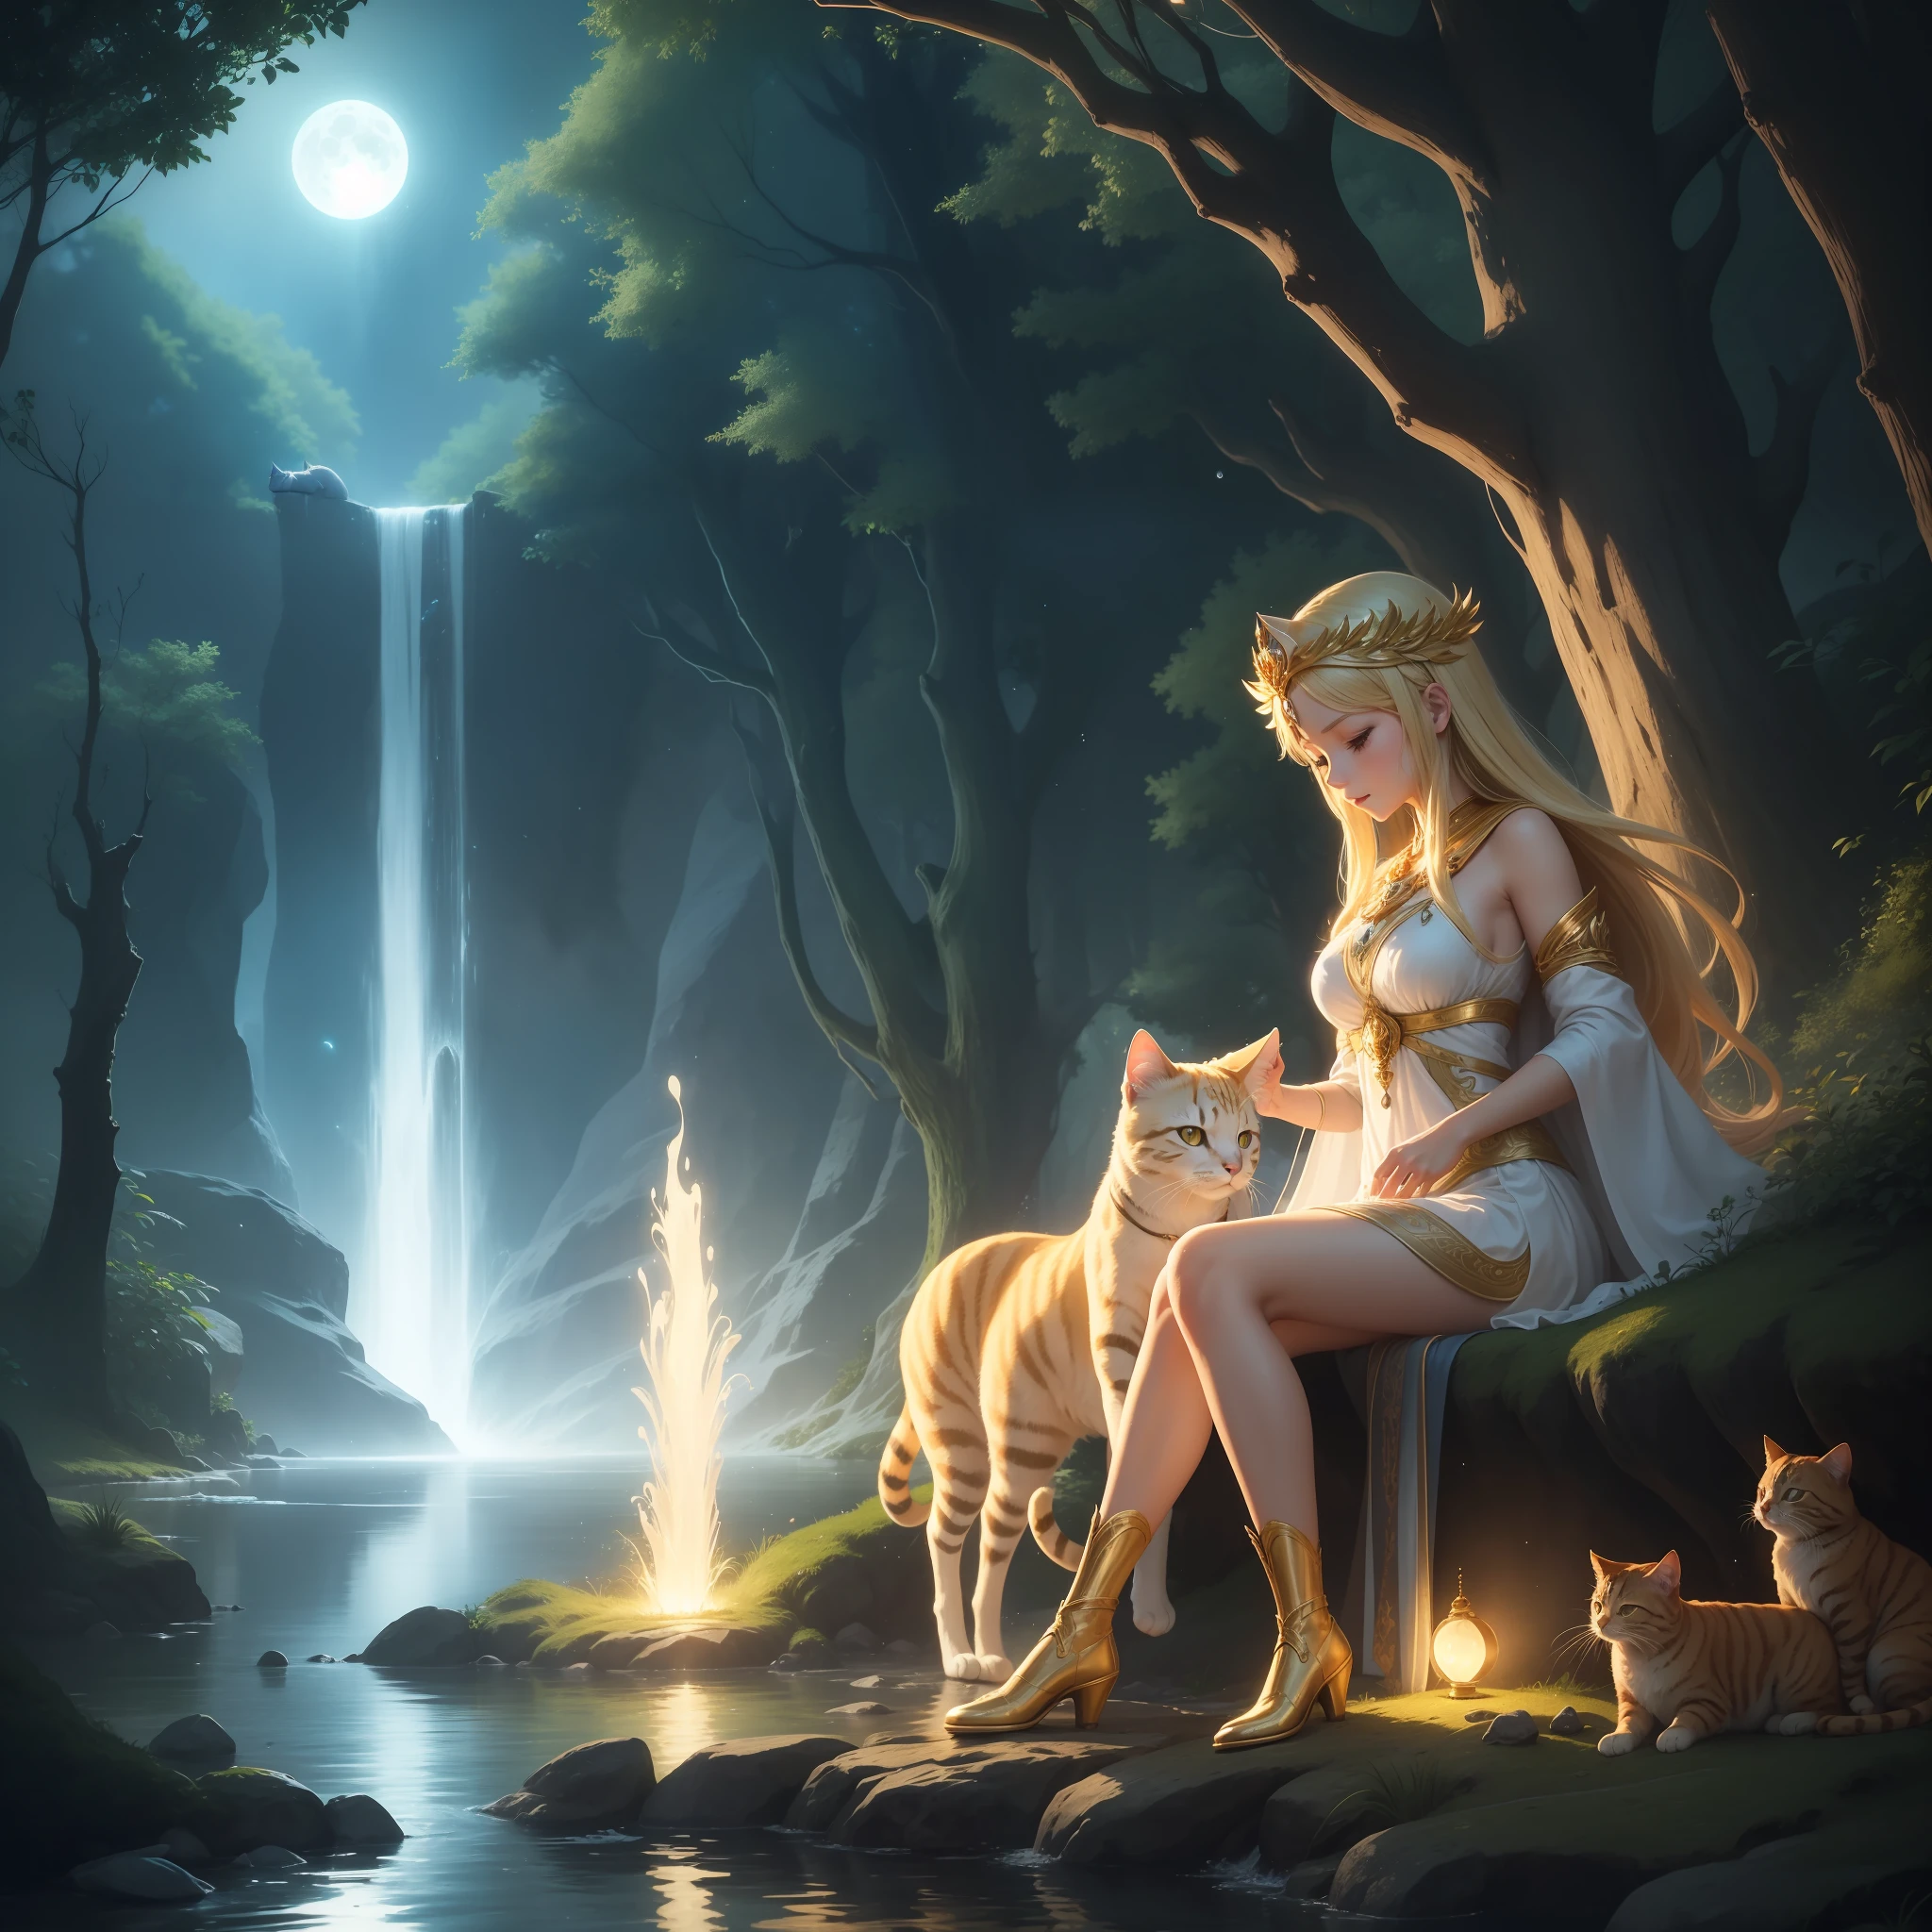 --Богиня Афина --купание---в озере --под мягким лунным светом --ее сияющая кожа, отражающая яркую луну --Золотые волосы, развевающиеся на ветру --Глаза яркие, как мерцающие звезды --Кристально чистая вода, ласкающая ее божественную форму --Желтая кошка в сапогах --скрывается-скрытая --с любопытным и озорным взглядом --Ее усы двигаются плавно --Пейзаж очарователен -- таинственный лес, окутанный волшебной аурой -- величественные деревья с густой листвой -- лунный свет, отфильтрованный зеленью навесы - Мягкий звук бегущей воды в озере создает безмятежную атмосферу - Звезды усеивают ночное небо, добавляя нотку небесного очарования - Пока Афина купается, сцена окутана неземным свечением - капли воды, кажется, вспыхивают вокруг нее - Желтый кот движется исподтишка, оставляя мягкие следы на песке - ощущение тайны и волшебства пронизывает всю окружающую среду, в то время как Афина и кошка наслаждаются этим уникальным и особенным моментом. - Спецэффекты - Кинематографическое освещение усиливает каждую деталь пейзажа - Лучи света от луны подчеркивают формы деревьев и богини - Капли воды мягко светятся, создание сверкающего эффекта - Панорамная камера показывает пышную красоту леса и озера - Детализированные крупные планы усиливают безмятежное выражение лица Афины и любопытство кошки - Мягкий, Эфирная музыка создает волшебную и привлекательную атмосферу - тщательный монтаж придает ритм сцене, подчеркивая очарование момента - сцена полна тайны и неожиданности, с умными вырезами, которые подчеркивают взаимодействие между богиней и кошкой - спецэффекты придают волшебный и небесный оттенок всей сцене, перенос зрителя в заколдованную вселенную мифов и чудес.